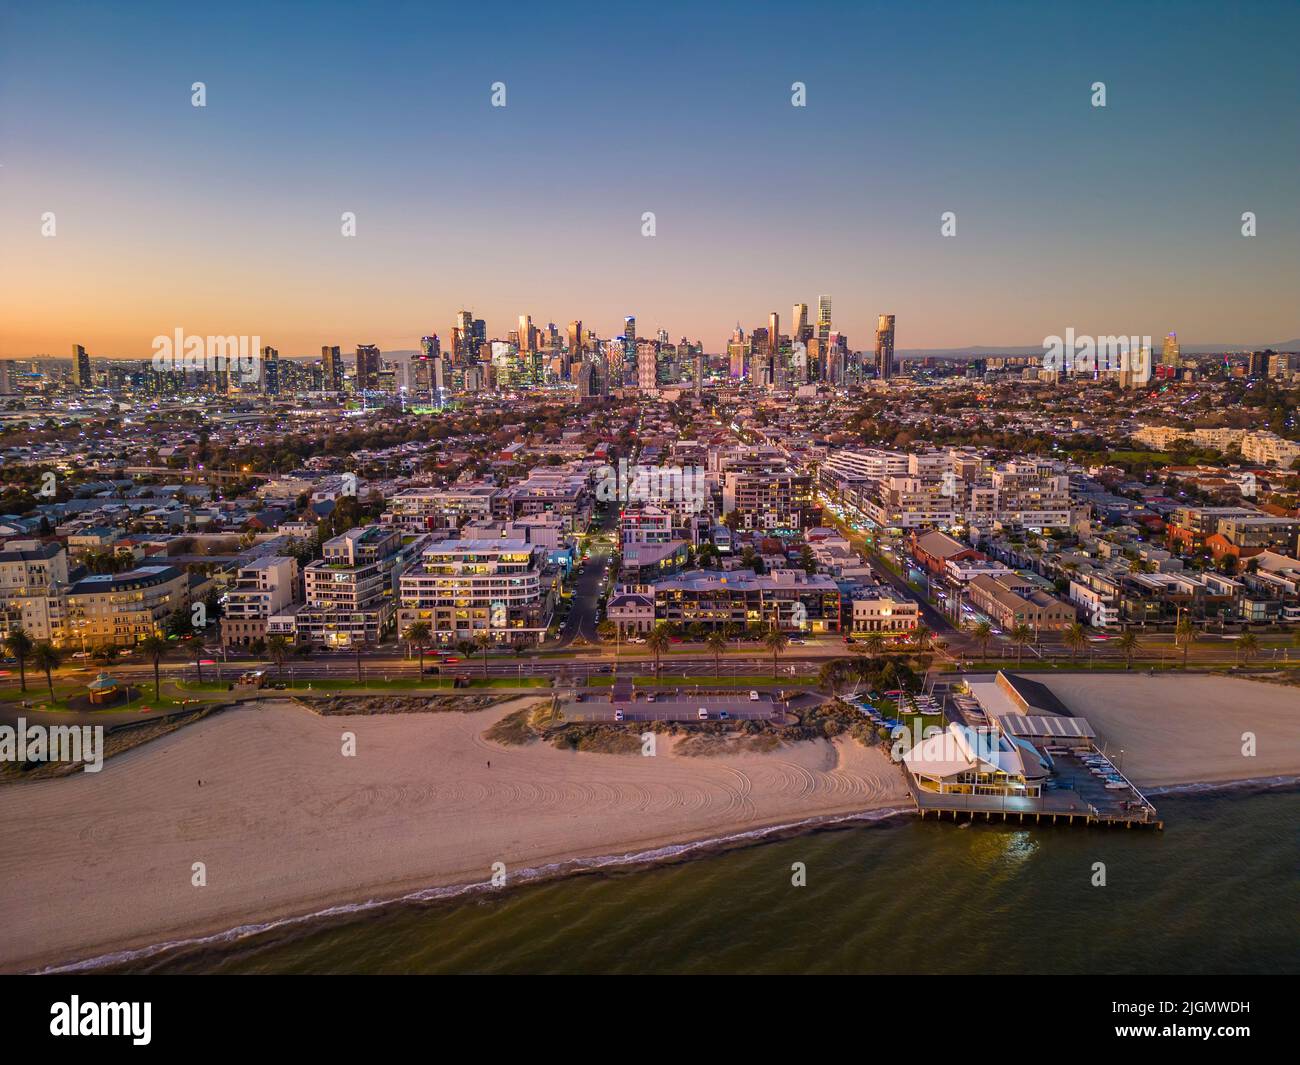 Vista aérea del barrio costero de Melbourne al atardecer Foto de stock